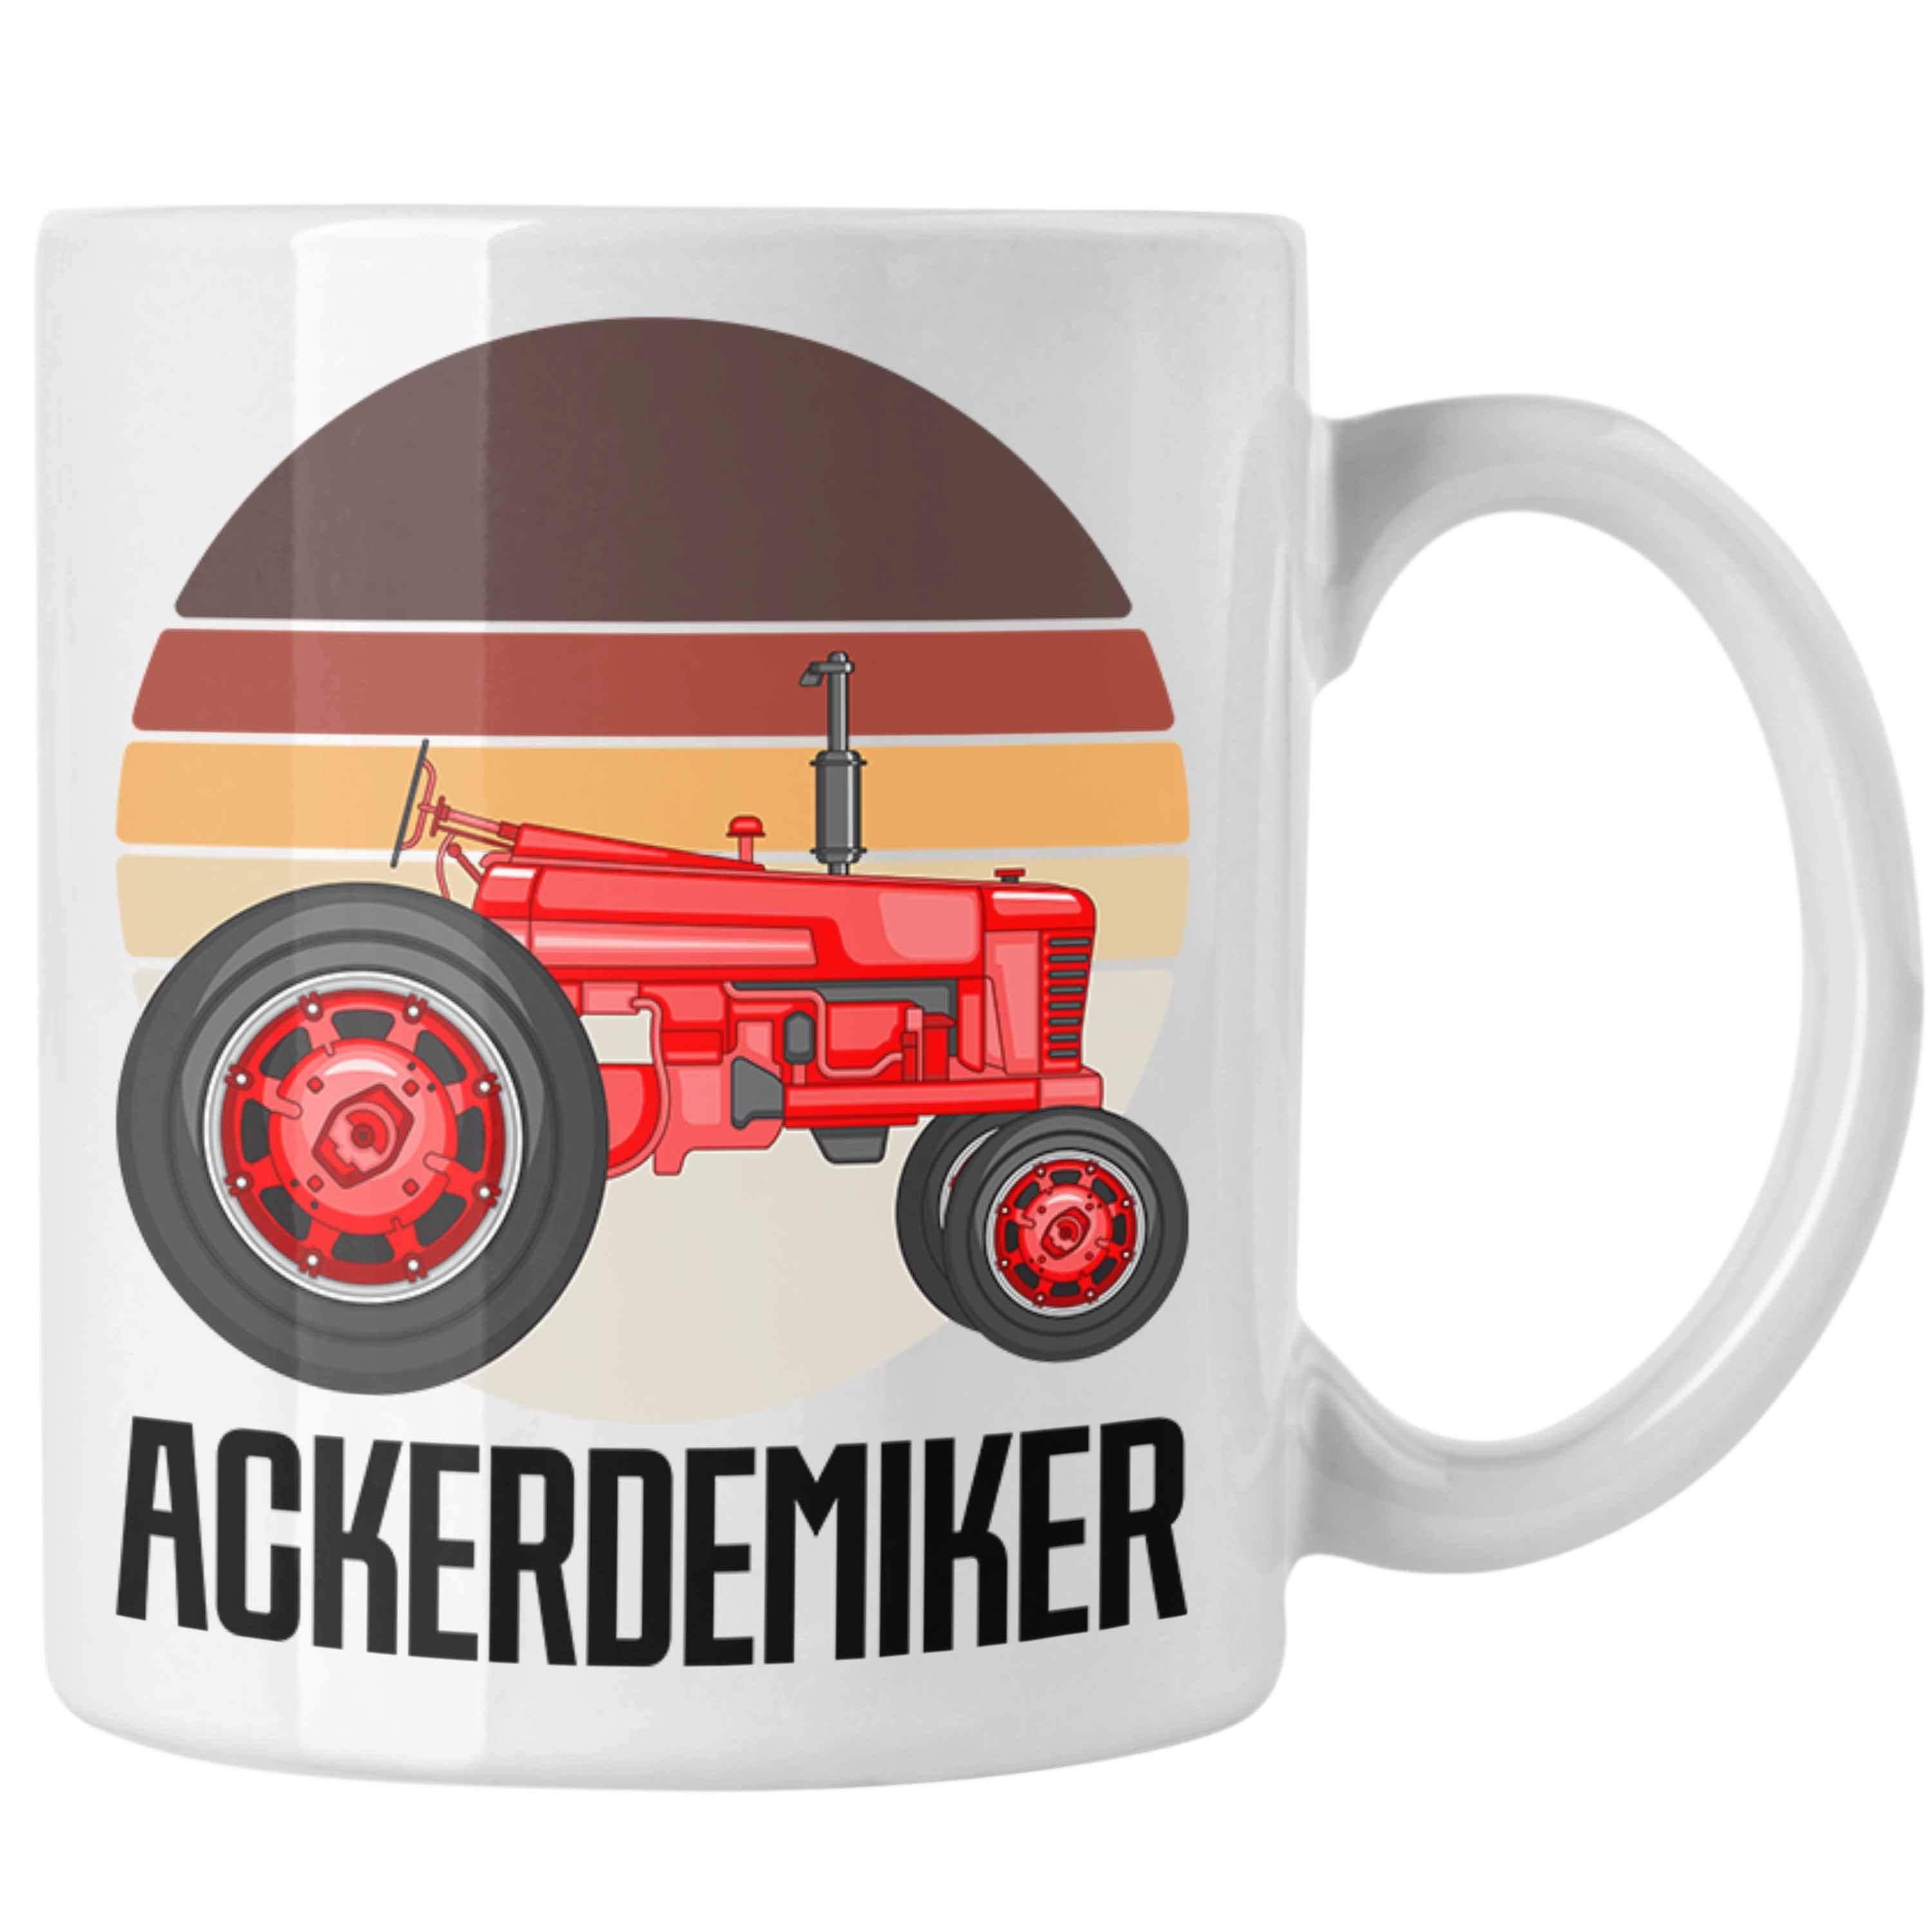 Trendation Tasse Ackerdemiker Tasse Geschenk für Landwirt Kaffee-Becher Geschenkidee Ba Weiss